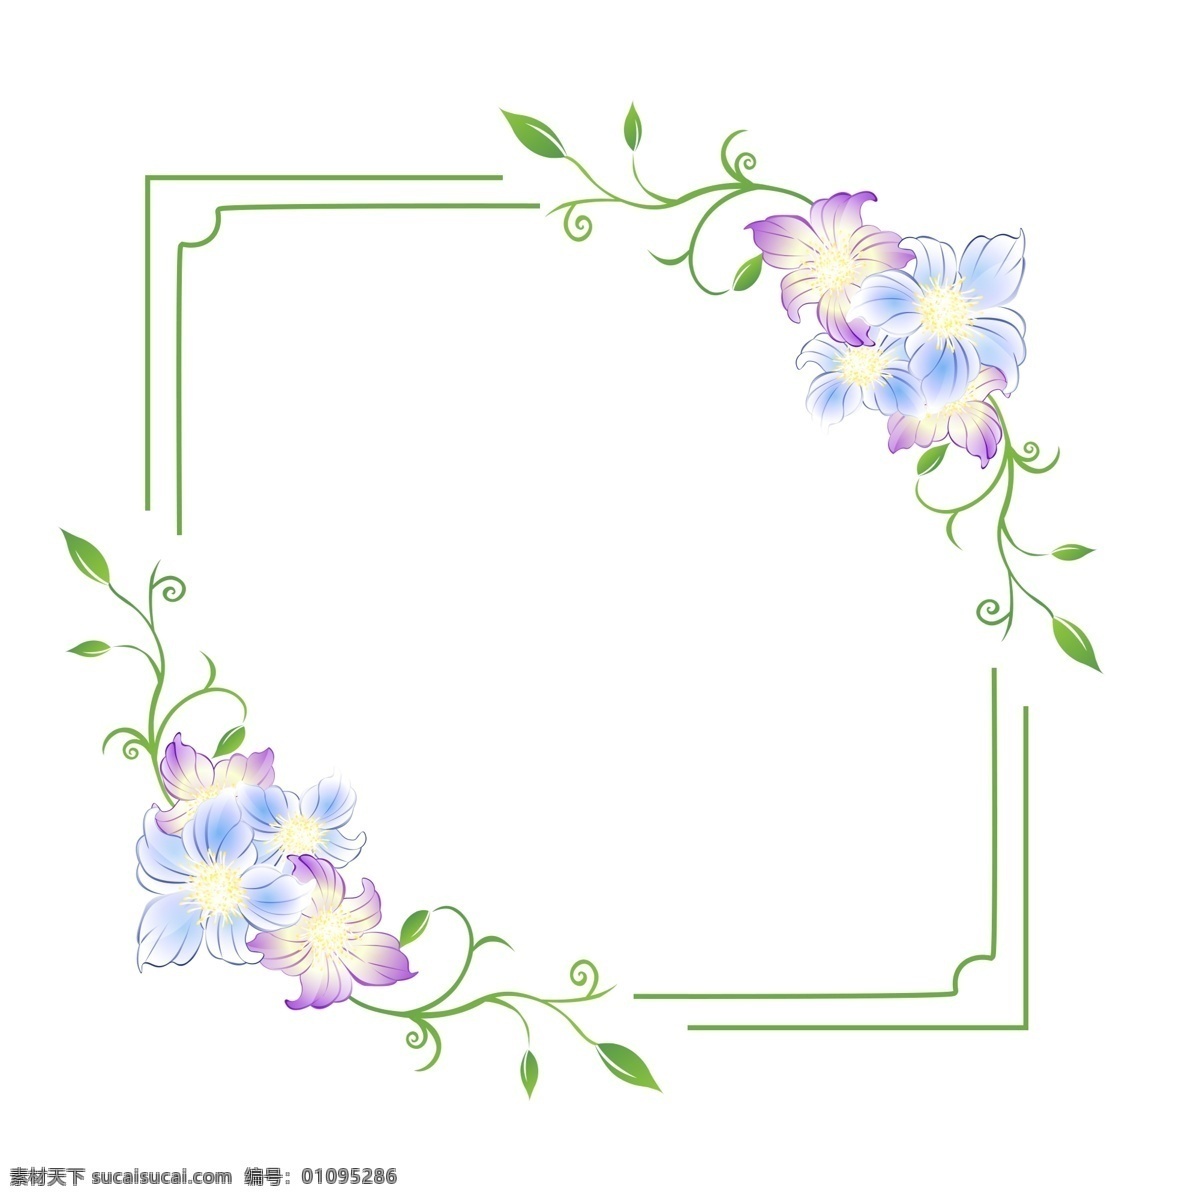 蓝色 婚礼鲜花 边框 蓝色的边框 鲜花边框 立体边框 边框装饰 绿色的边框 边框插画